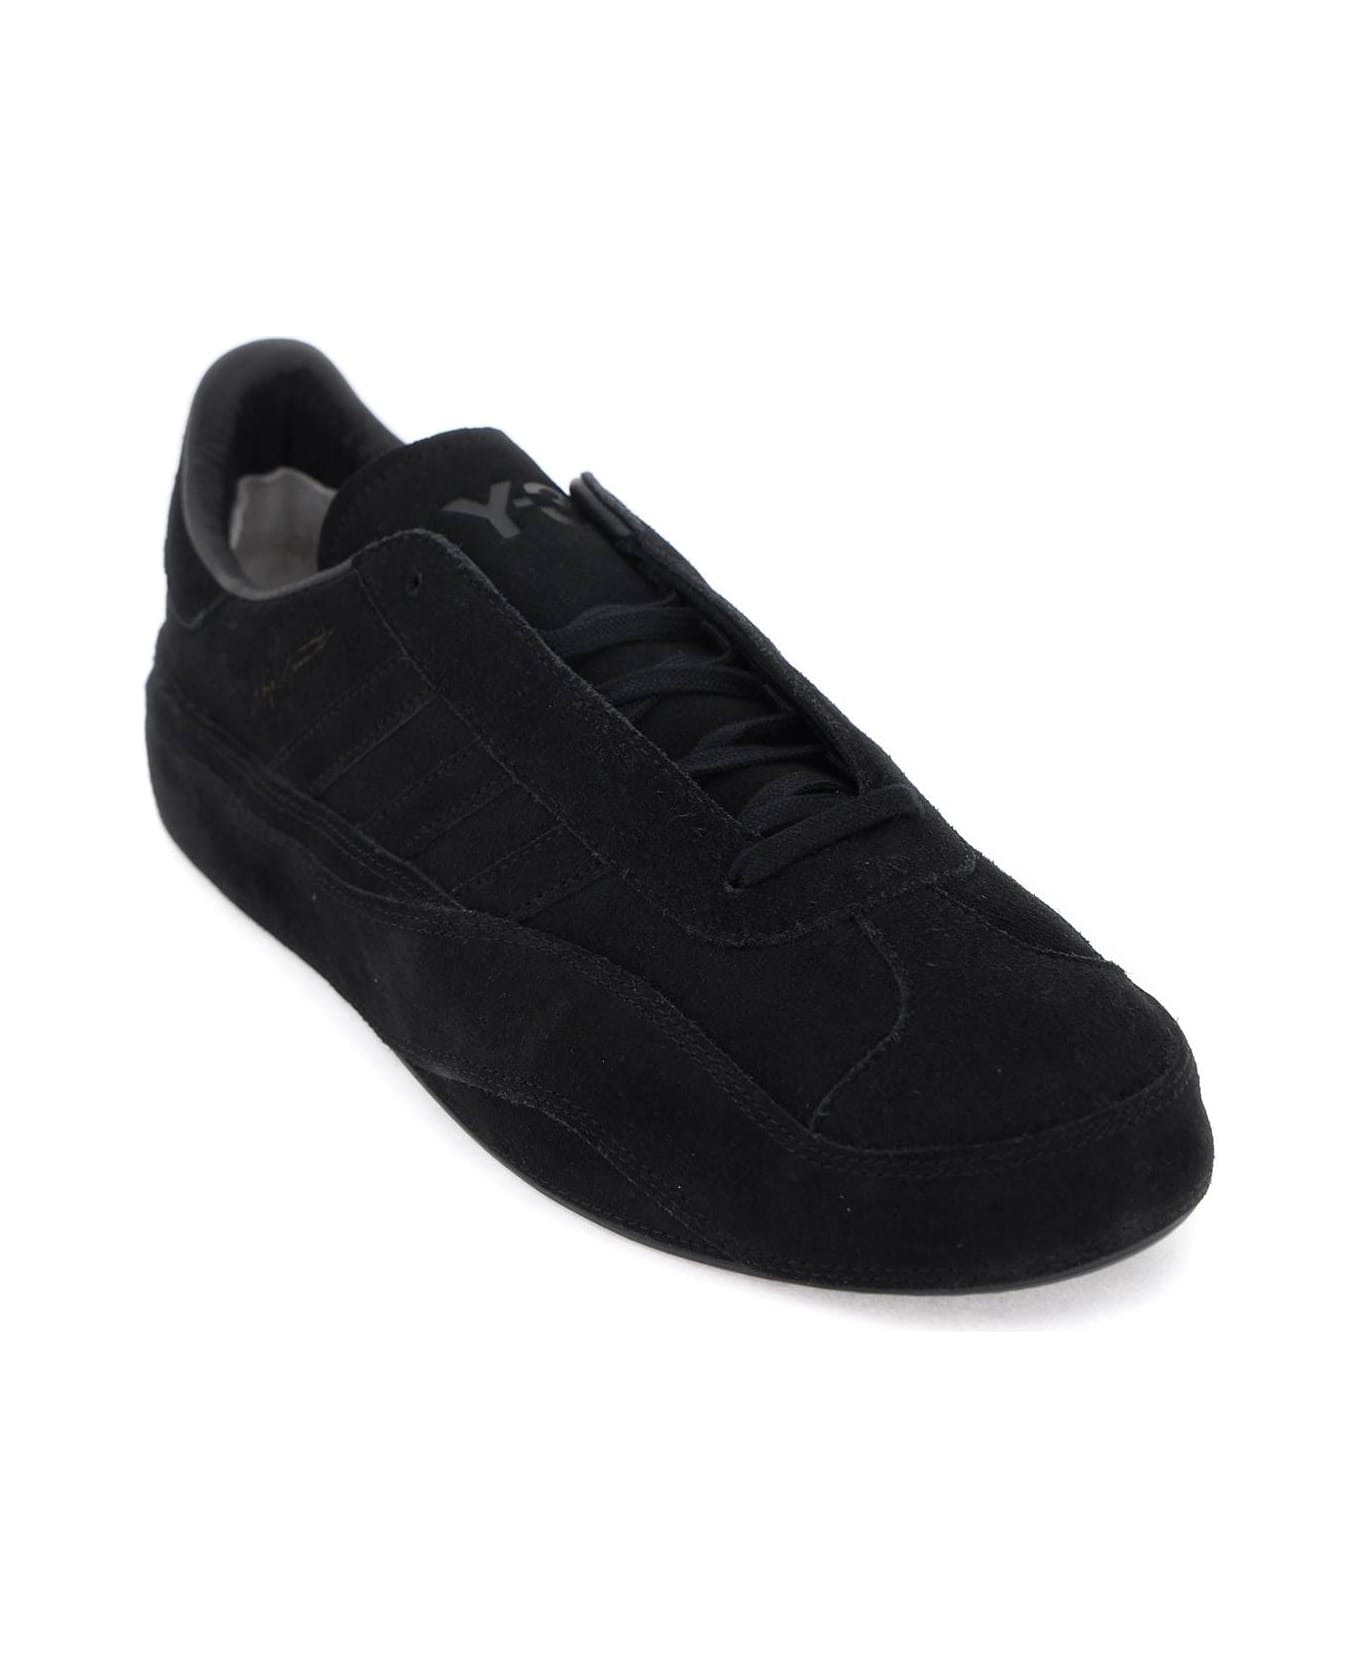 Y-3 Gazzelle Sneakers - BLACK BLACK BLACK (Black)